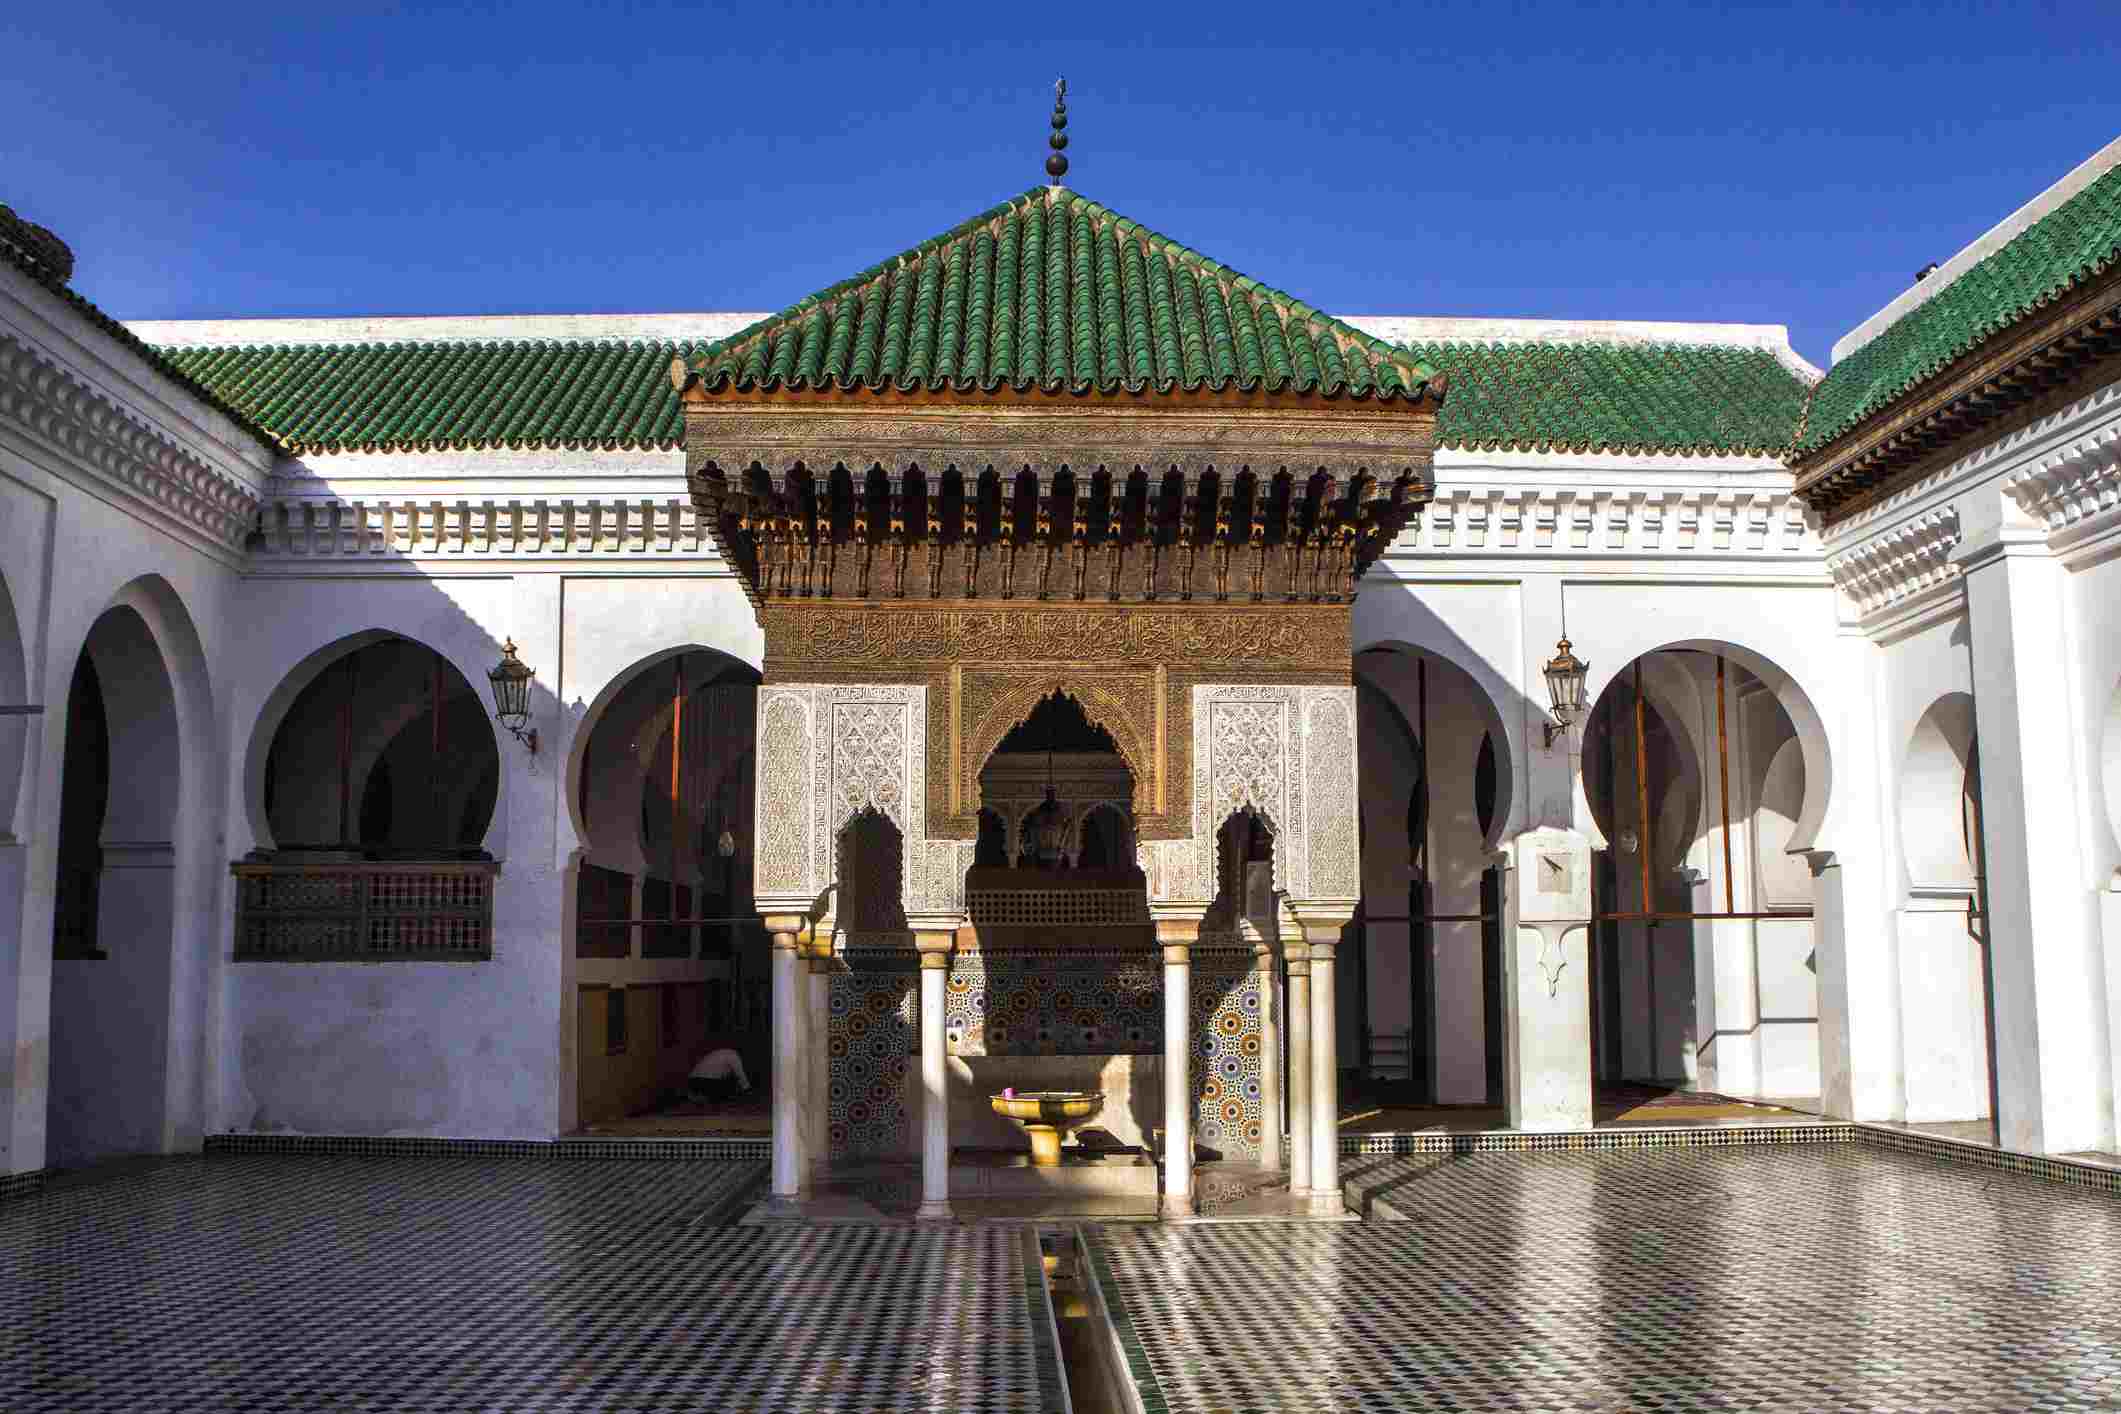 Morocco Private Tours